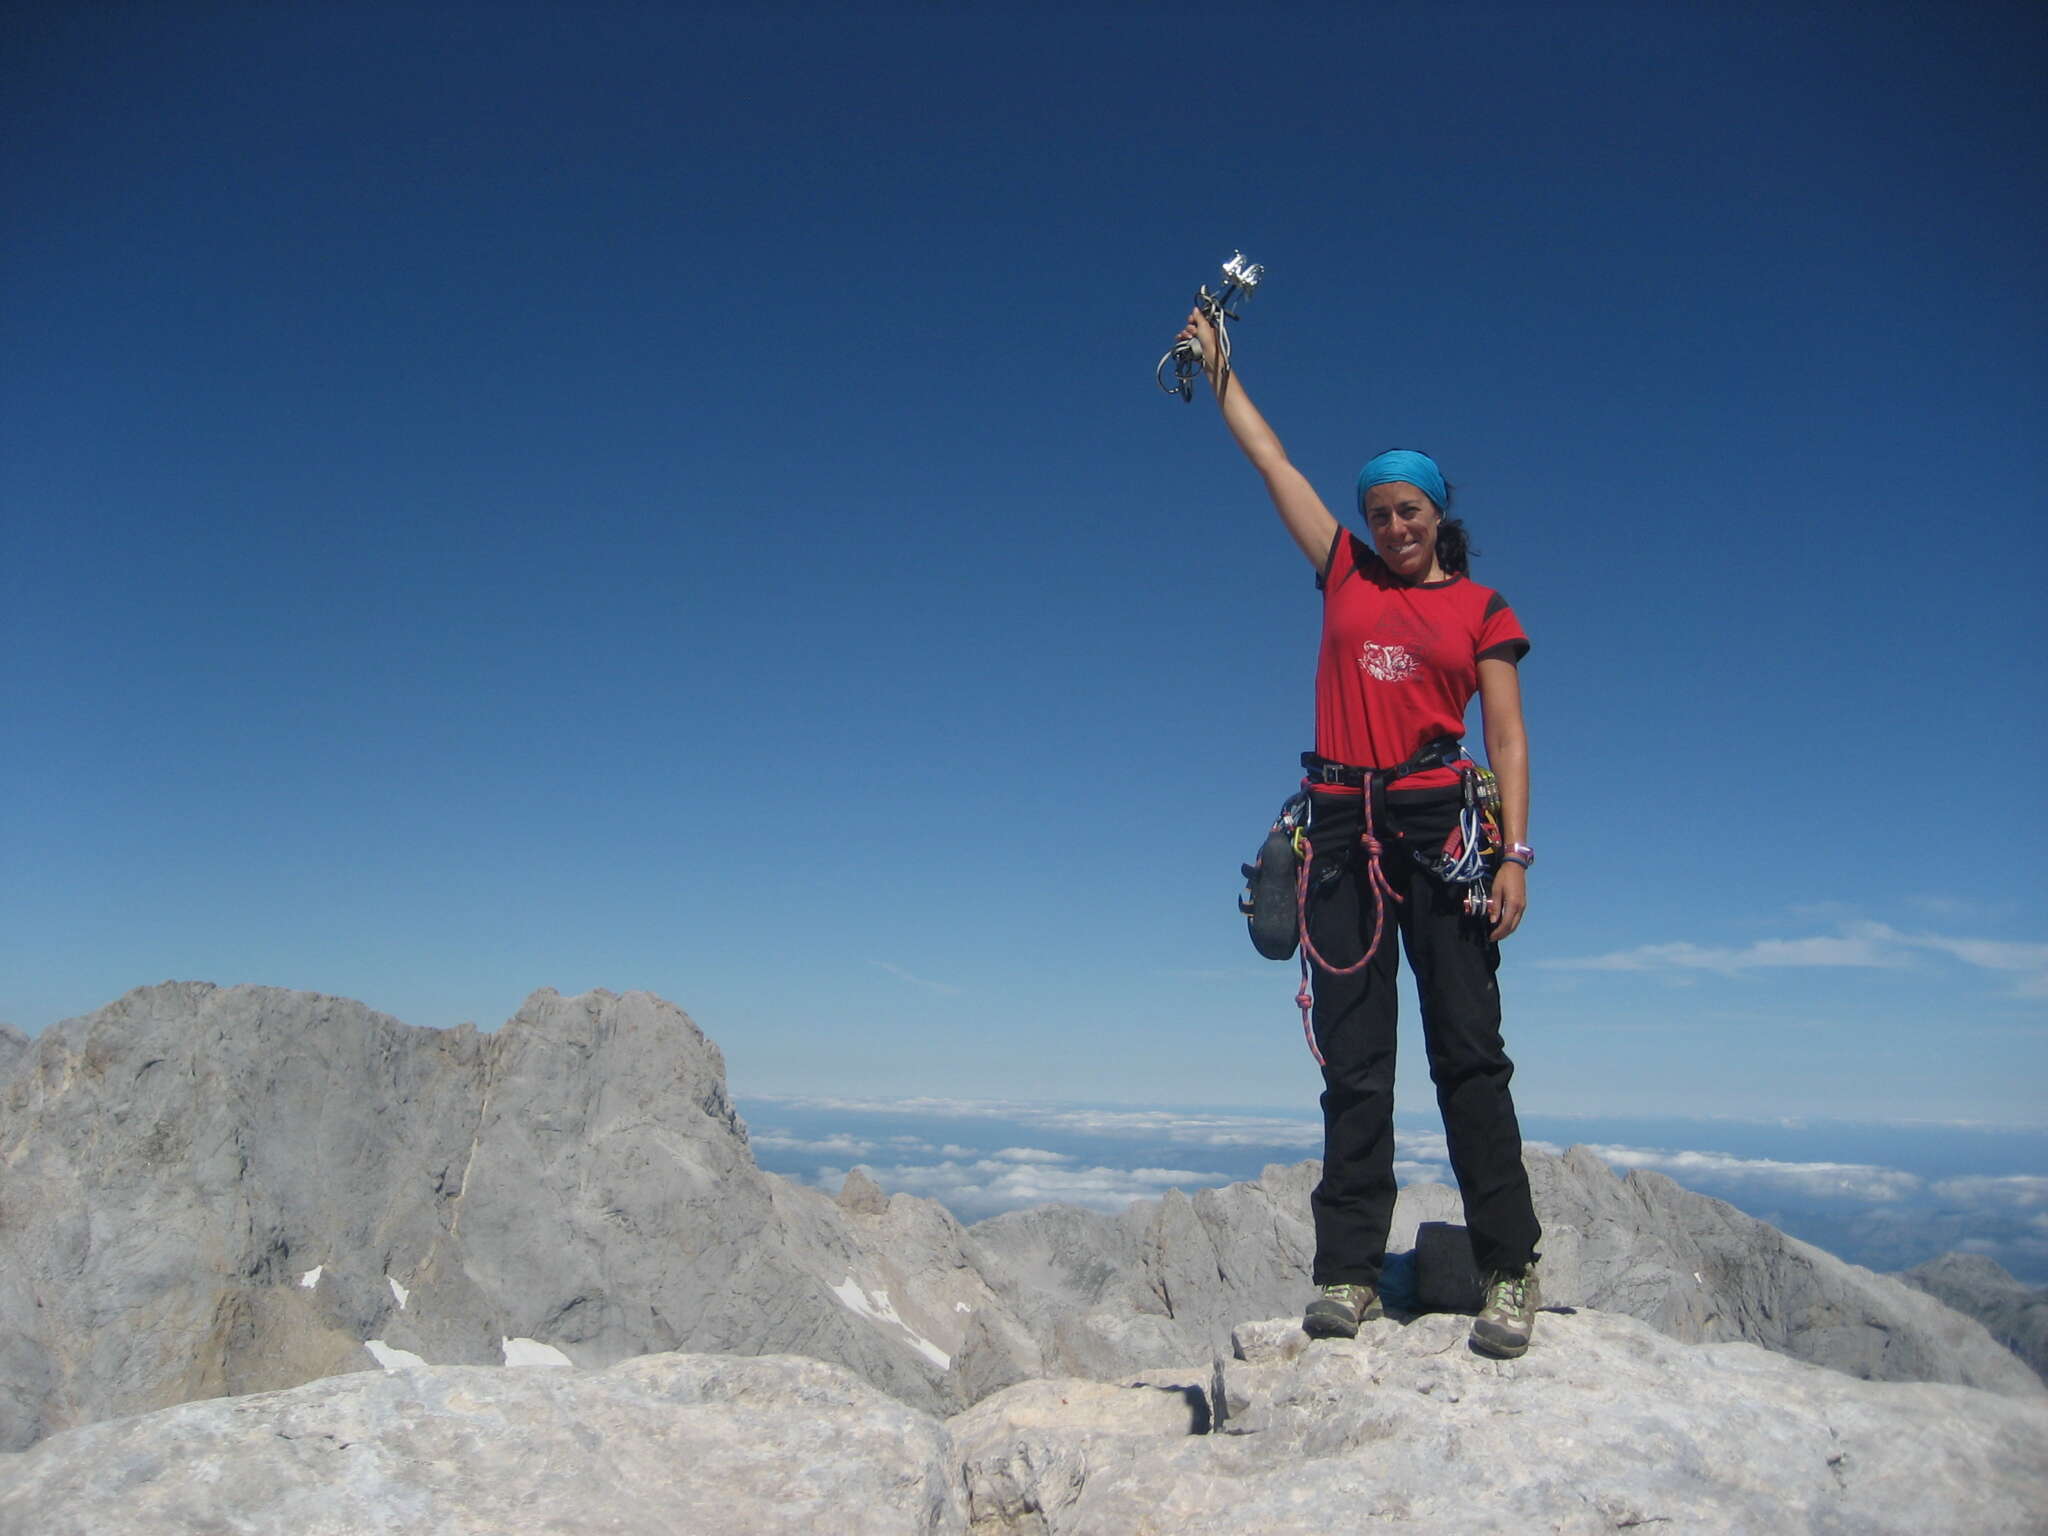 Lara Magdaleno, en la cima de una montaña con unos crampones en alto